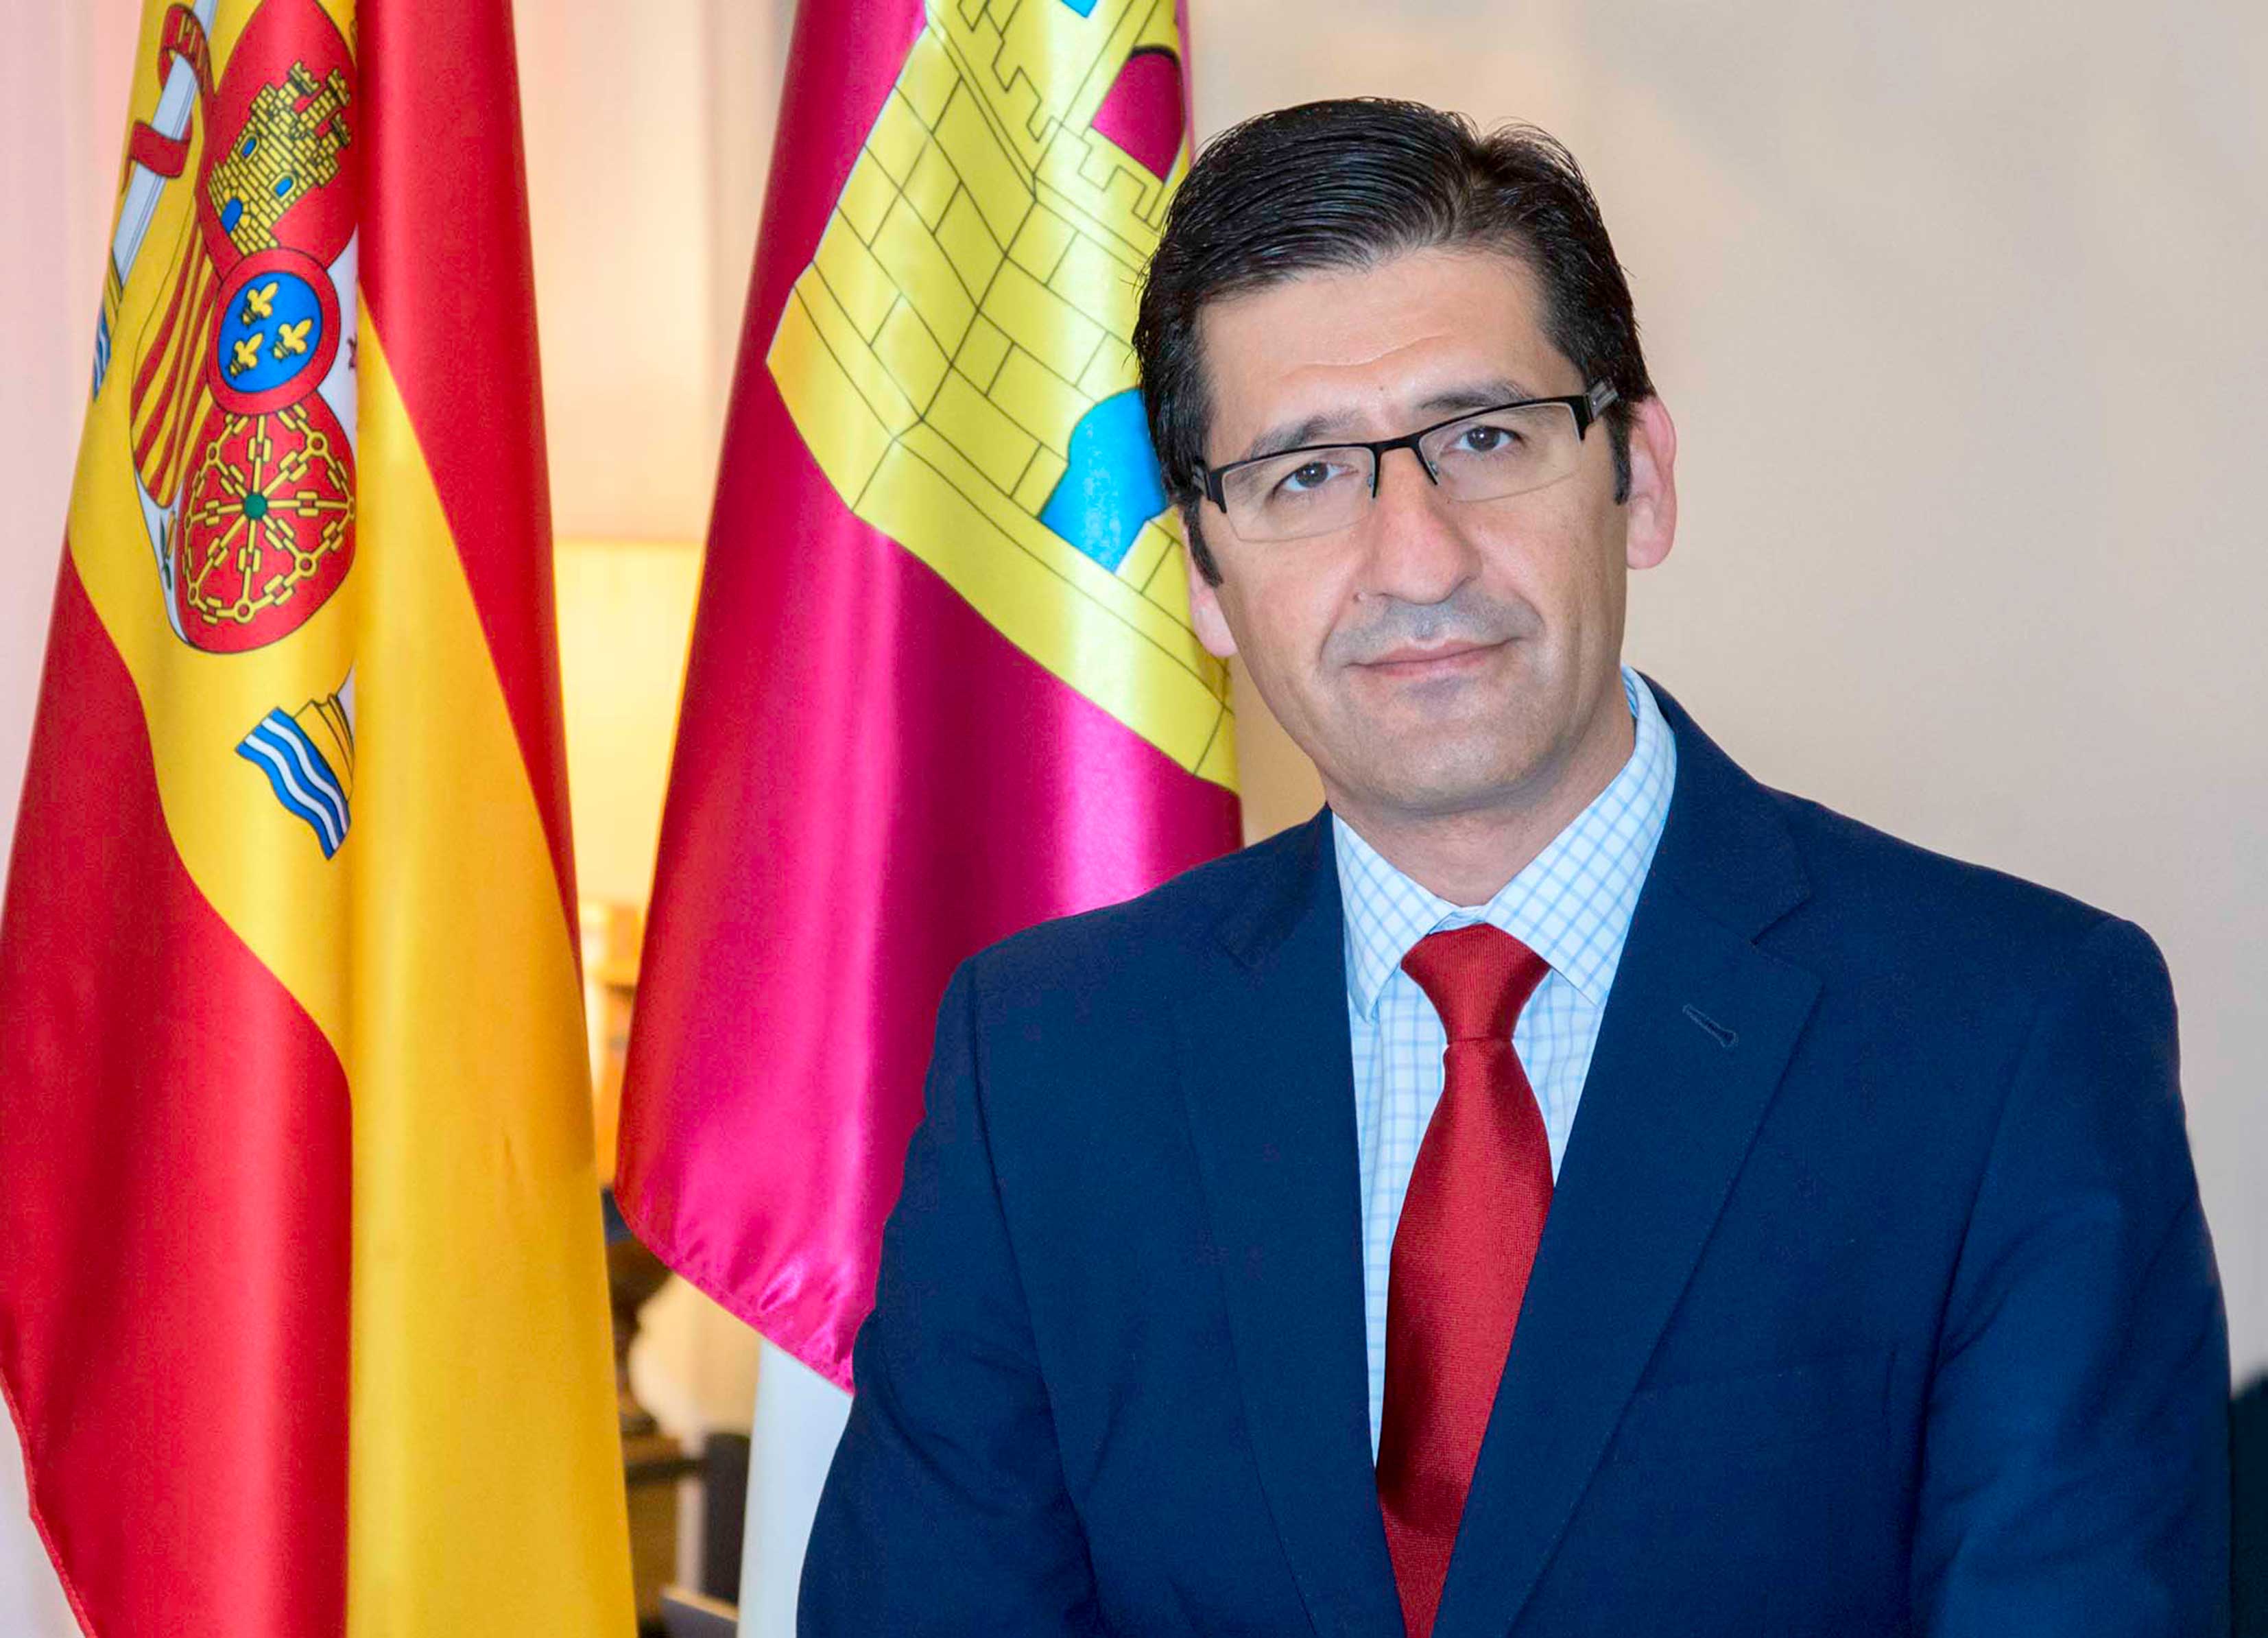 Saludo del Presidente de la Diputación Provincial de Ciudad Real, José Manuel Caballero, con motivo de la Feria y Fiestas de Tomelloso 2022